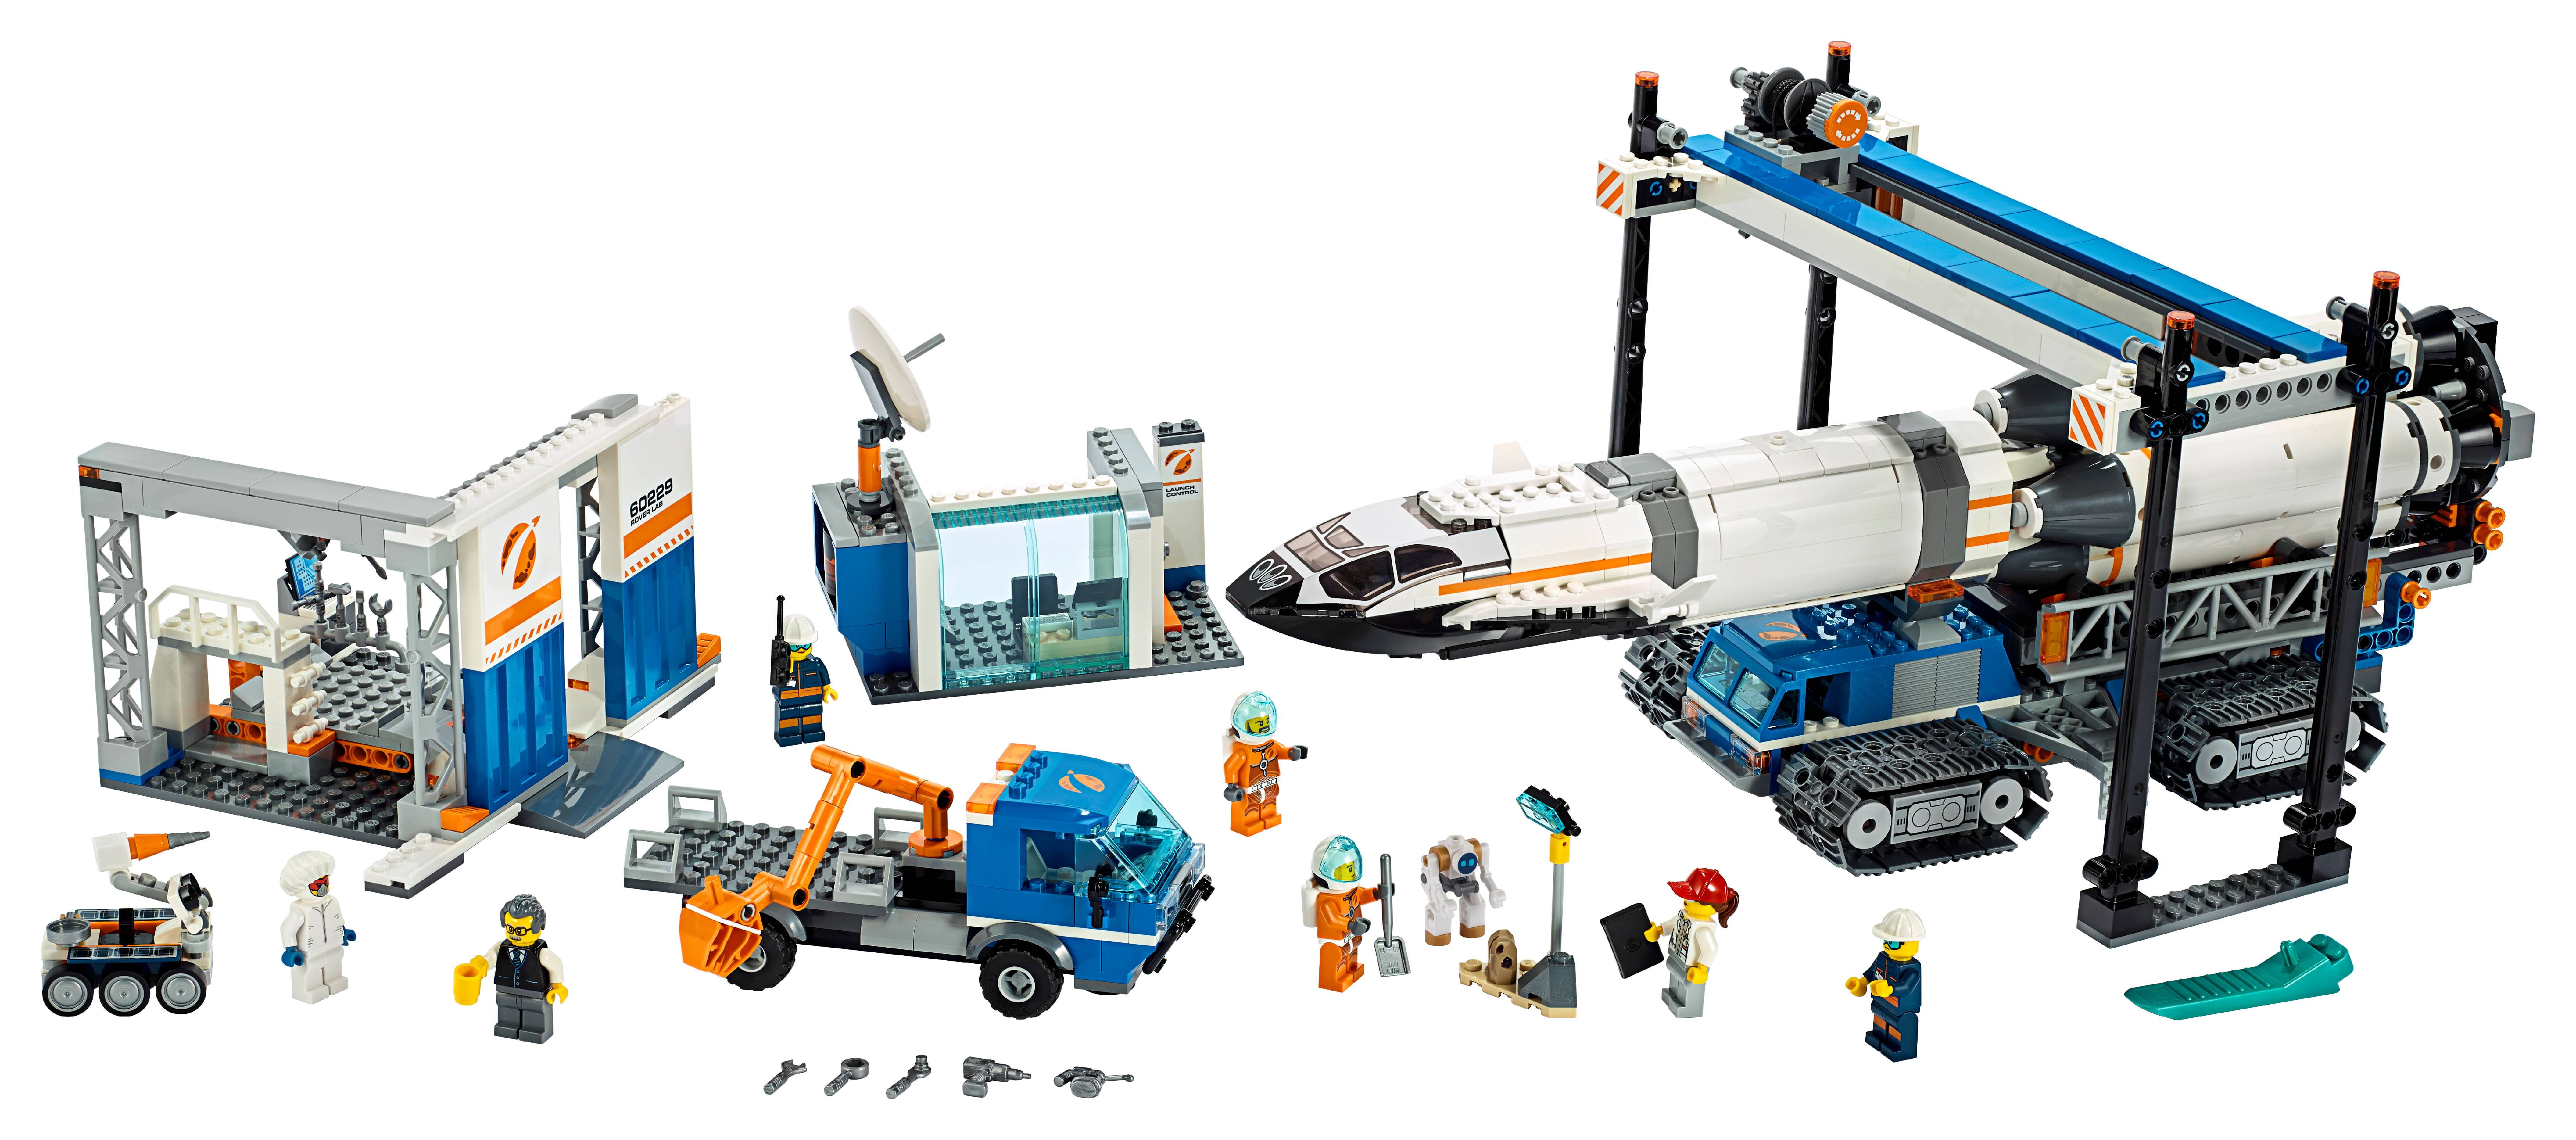 LEGO City Space Rocket Assembly \u0026 